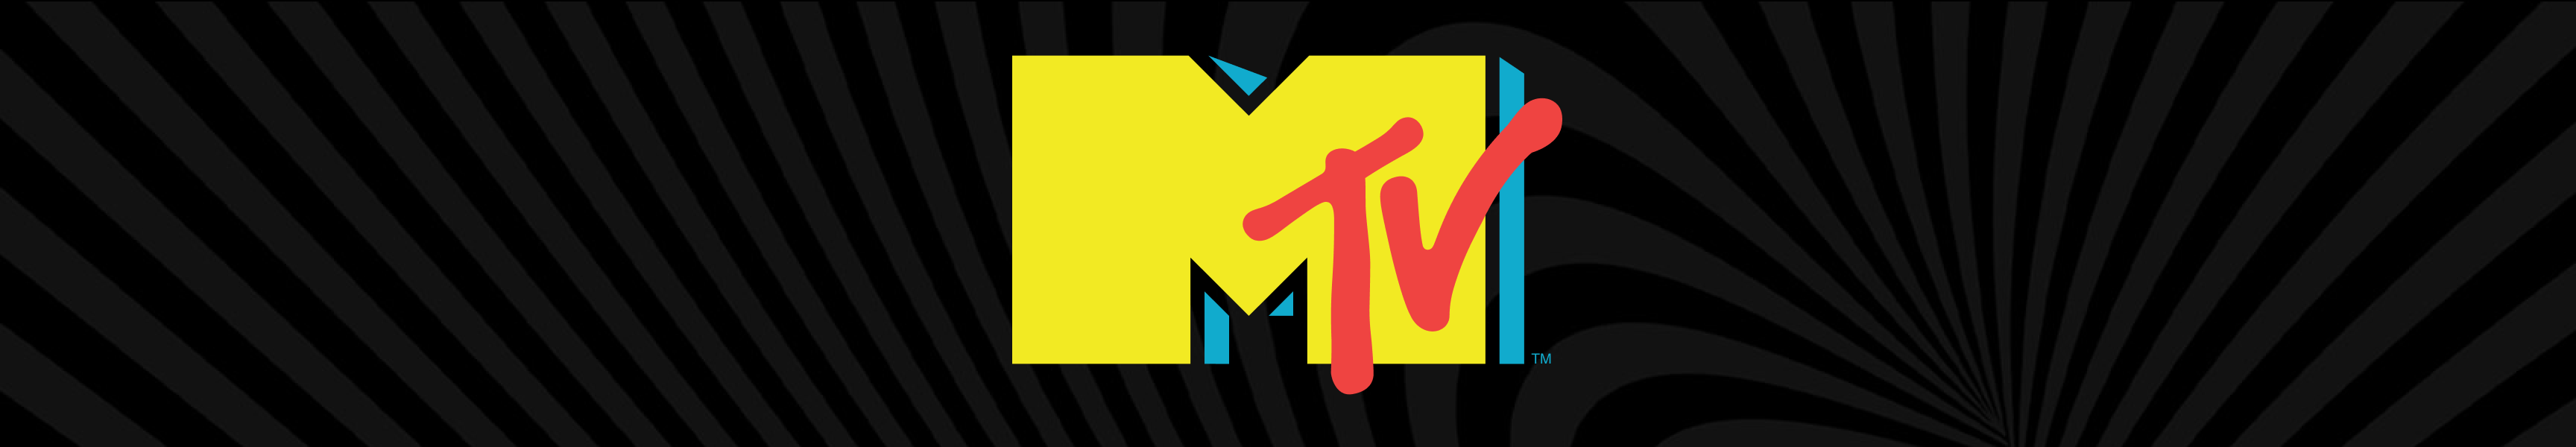 Copas de vino MTV